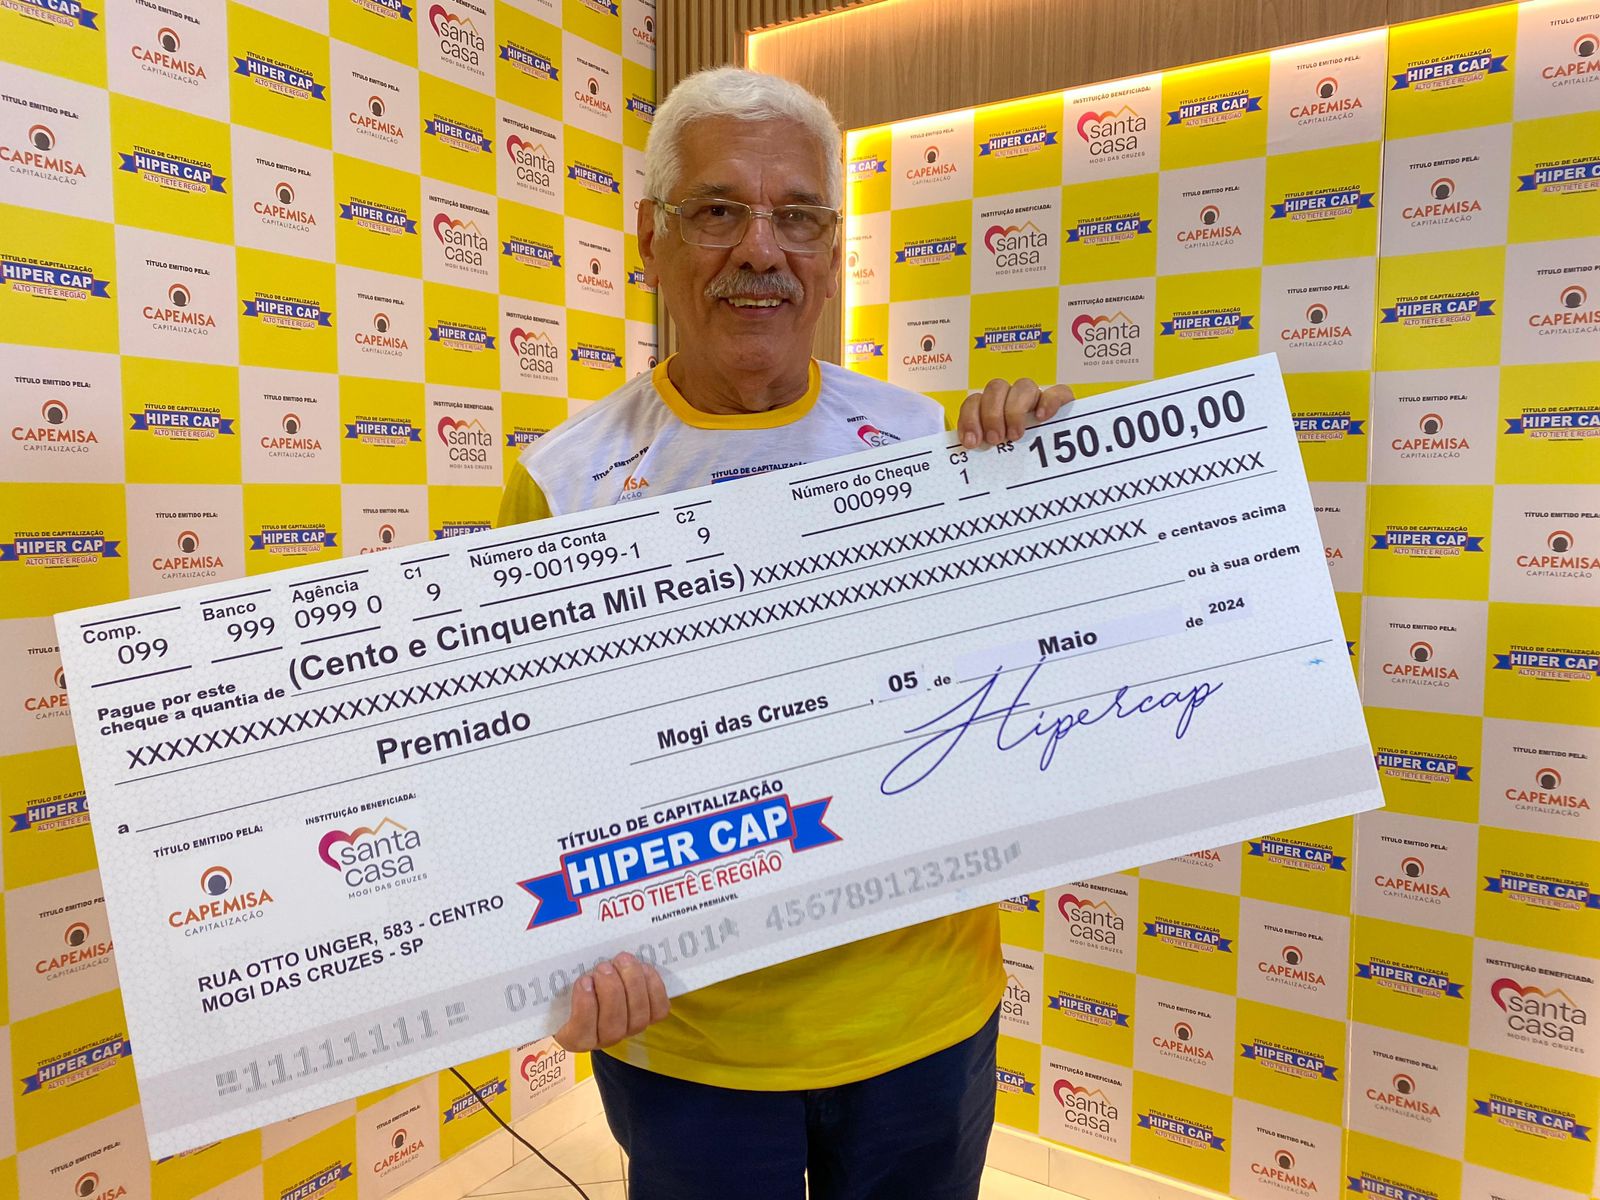 Quatro ganhadores dividiram o quarto prêmio do Hiper Cap valendo 150 mil reais